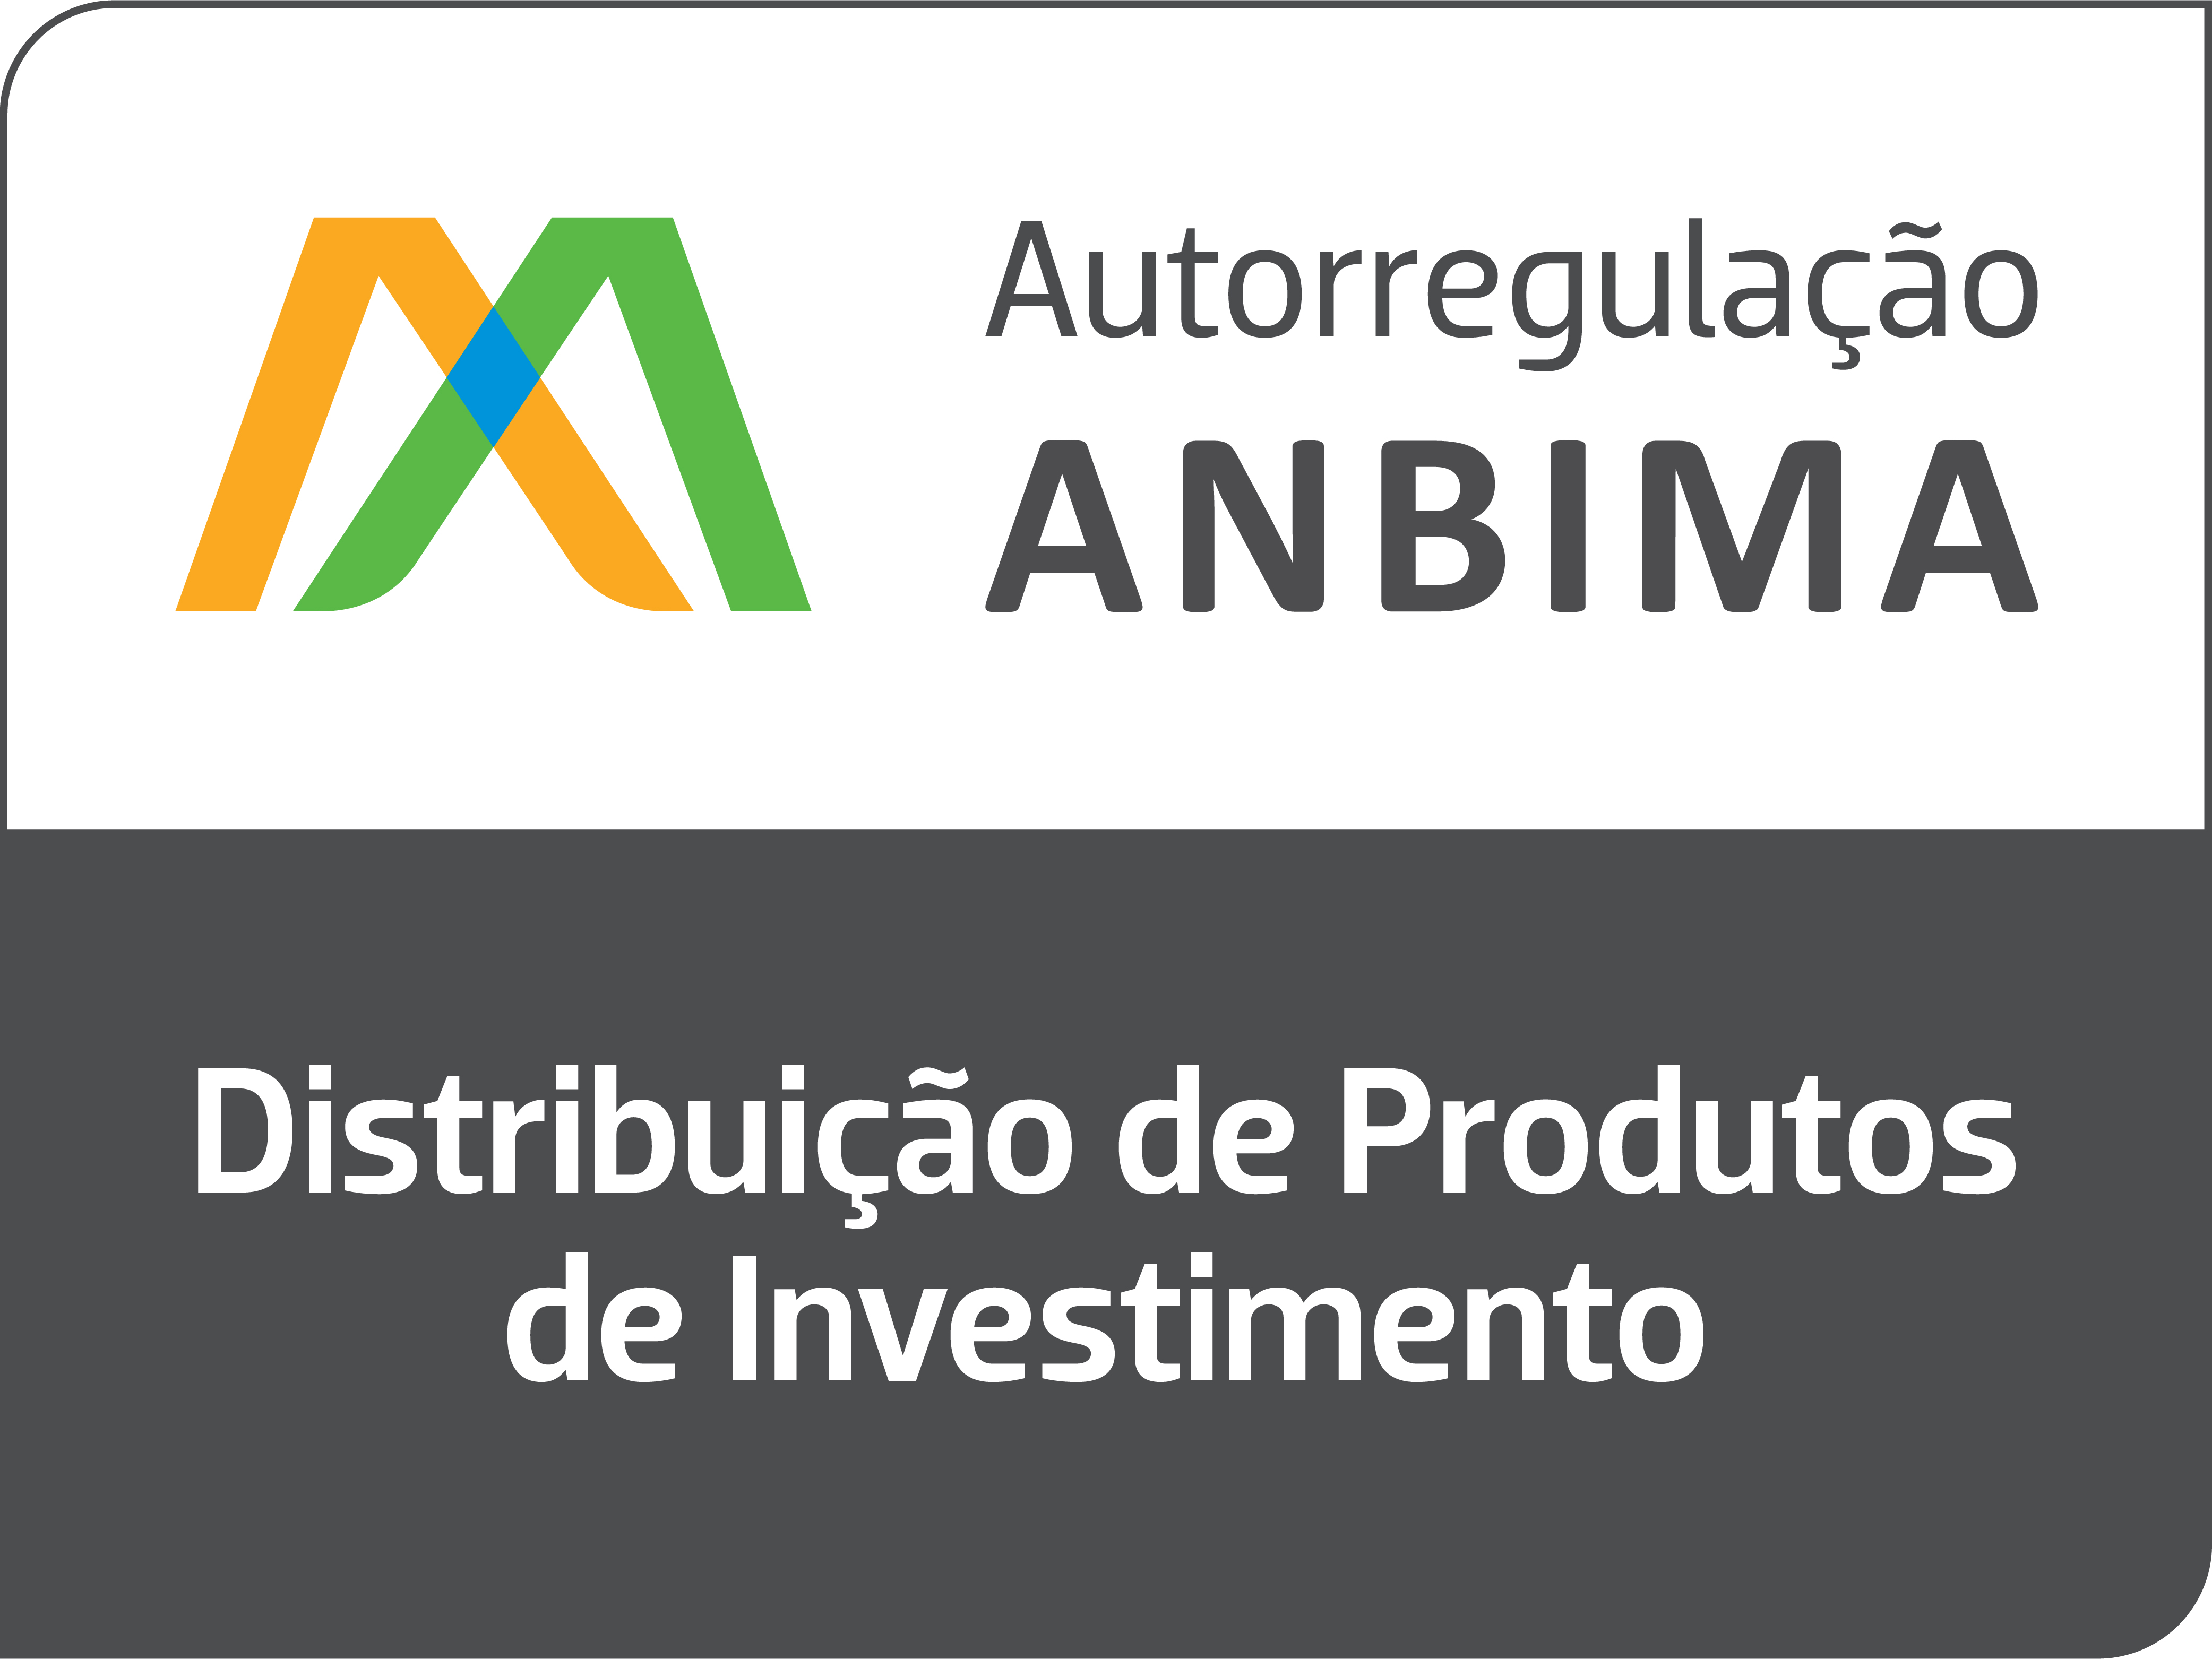 Logo AMBIMA - Distribuição de Produtos de Investimento Permanente